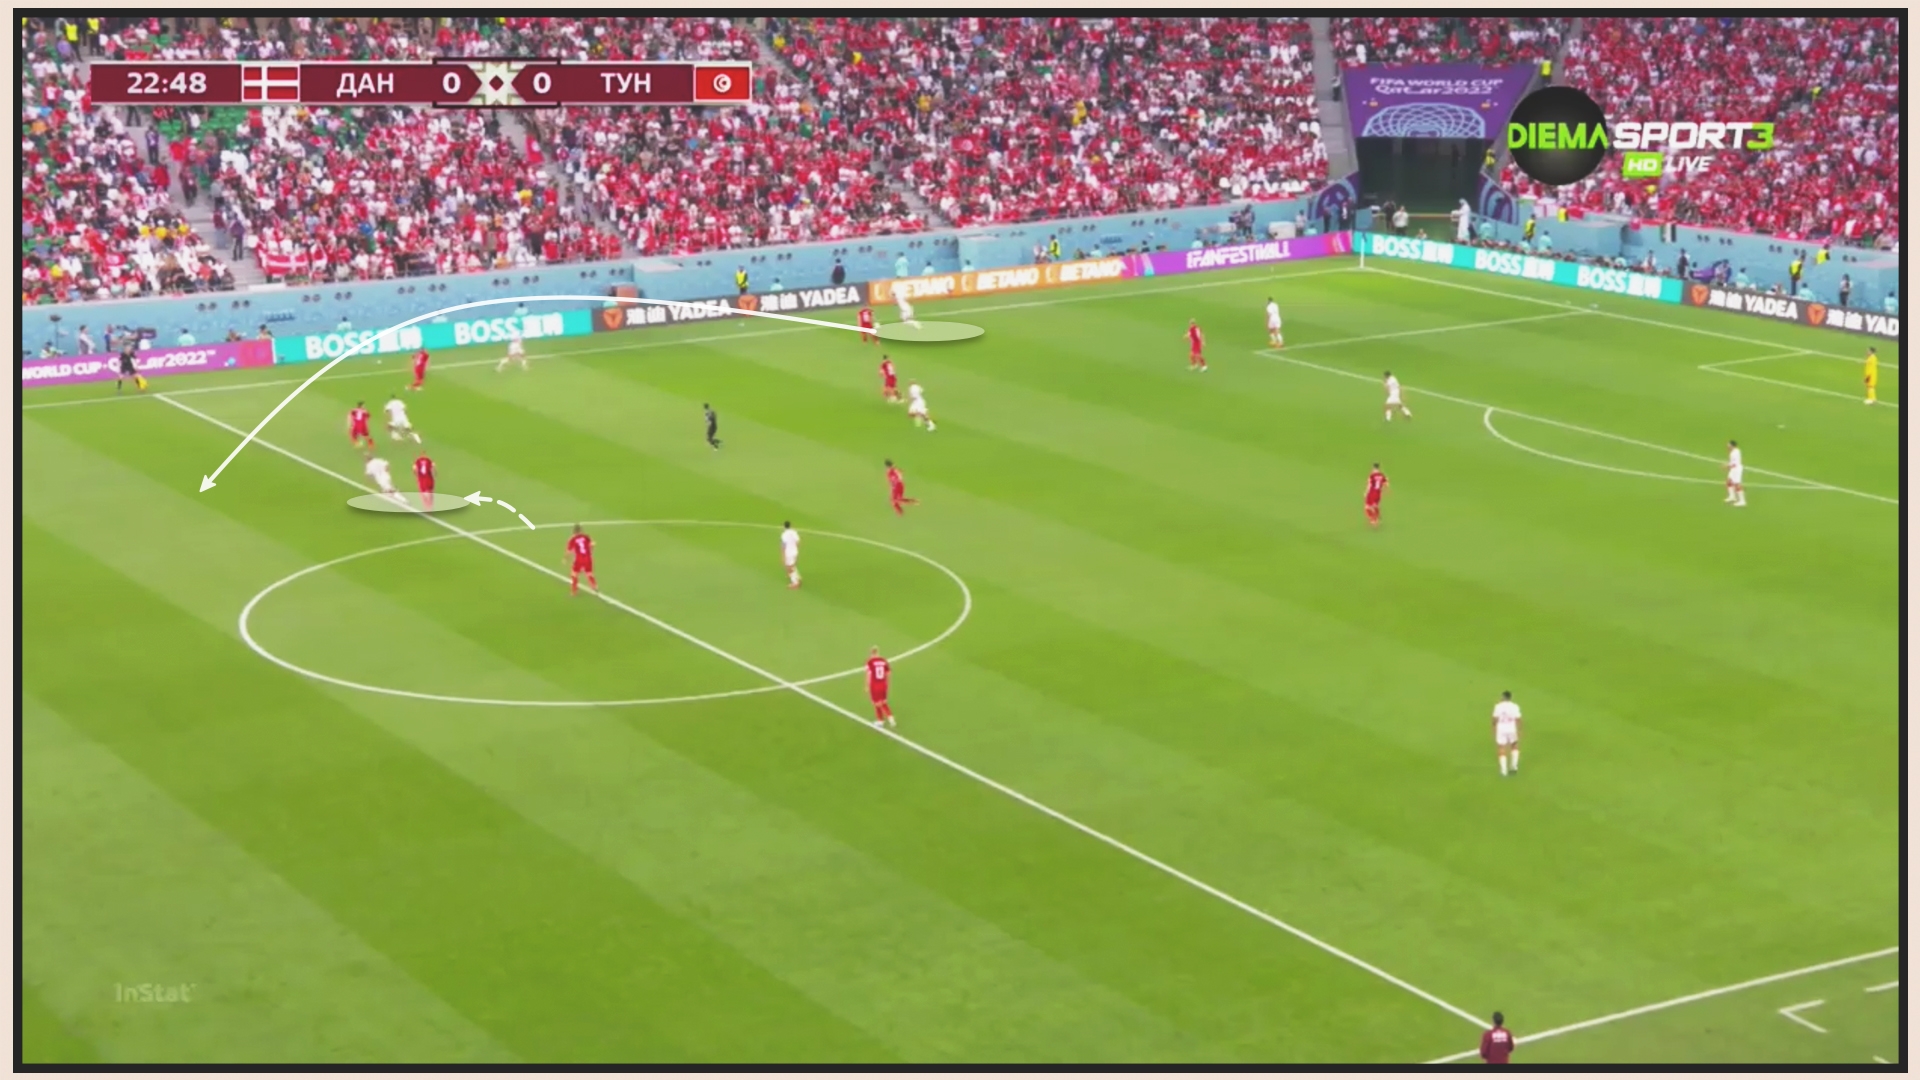 Đan Mạch 0-0 Tunisia Đan Mạch bị hoá giải 4